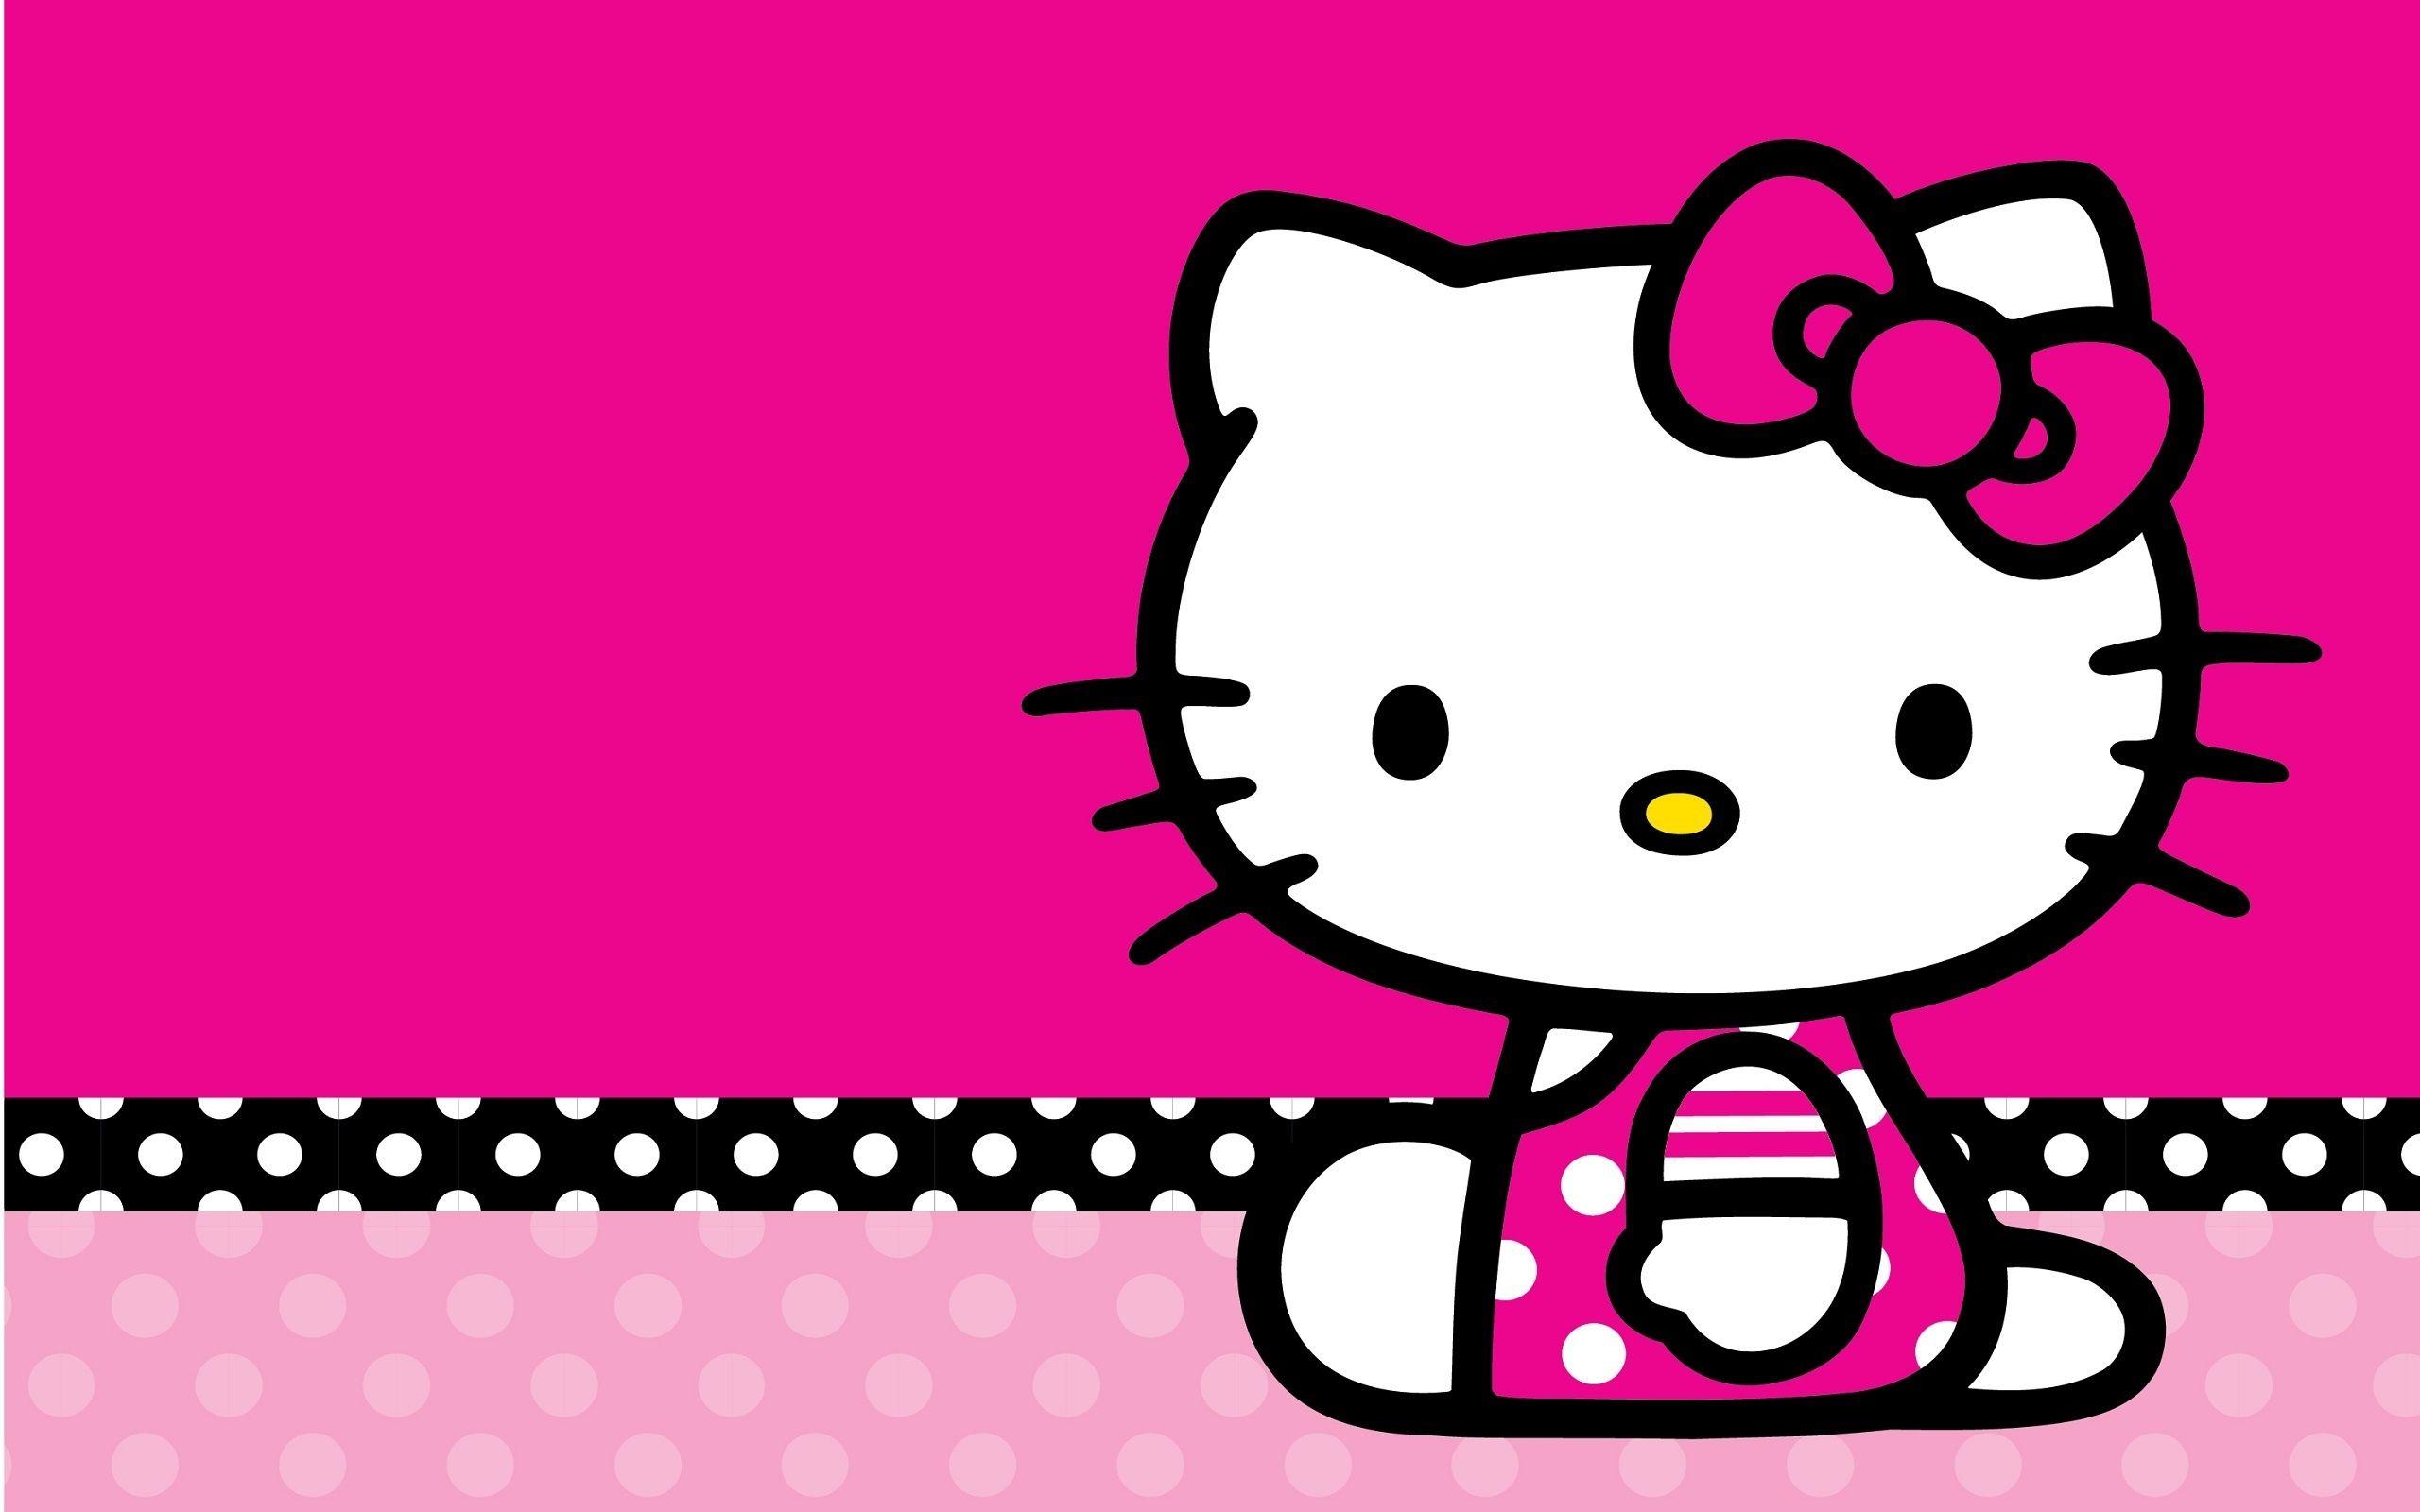 hello kitty baby wallpaper pink car youwall hello kitty free 124037